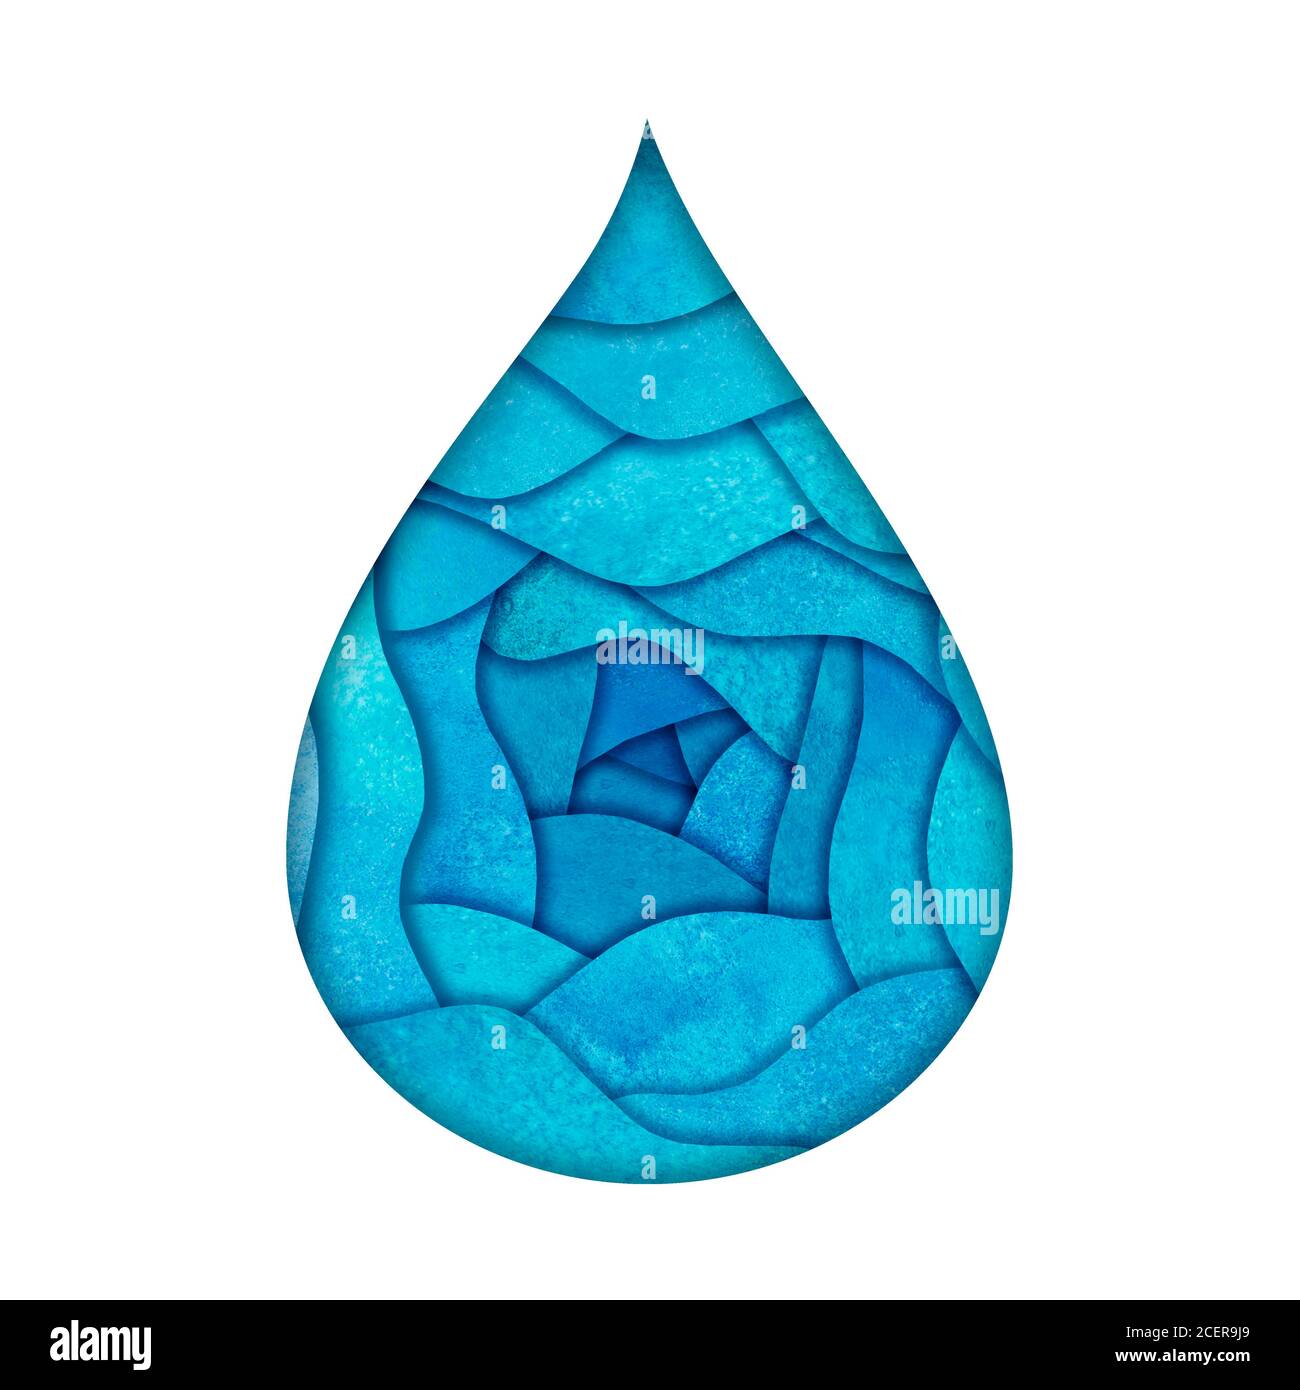 Modello con logo Water Drop. Acquerello dipinto a mano blu teal turchese carta taglio stile logotipo. Acquerello naturale aqua. Risparmiare acqua, ecologia, Foto Stock